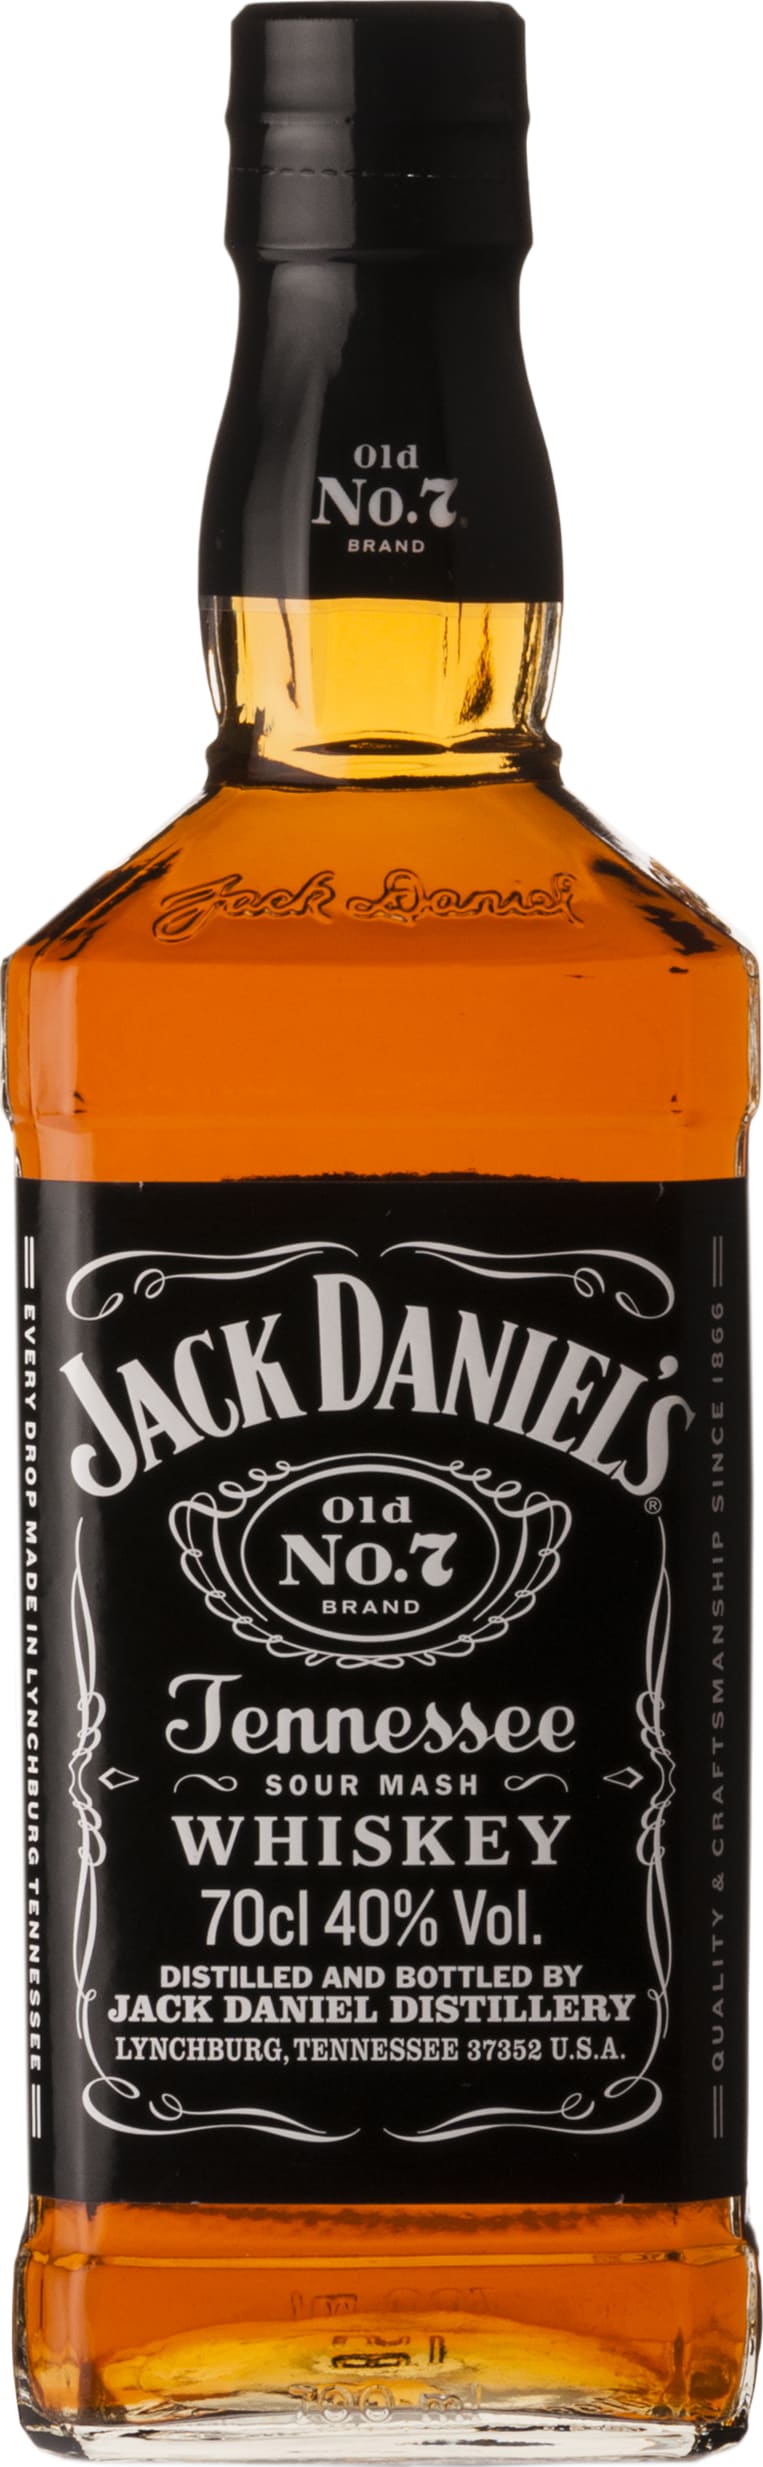 Jack Daniels Jack Daniel's 70cl NV - Buy Jack Daniels Wines from GREAT WINES DIRECT wine shop